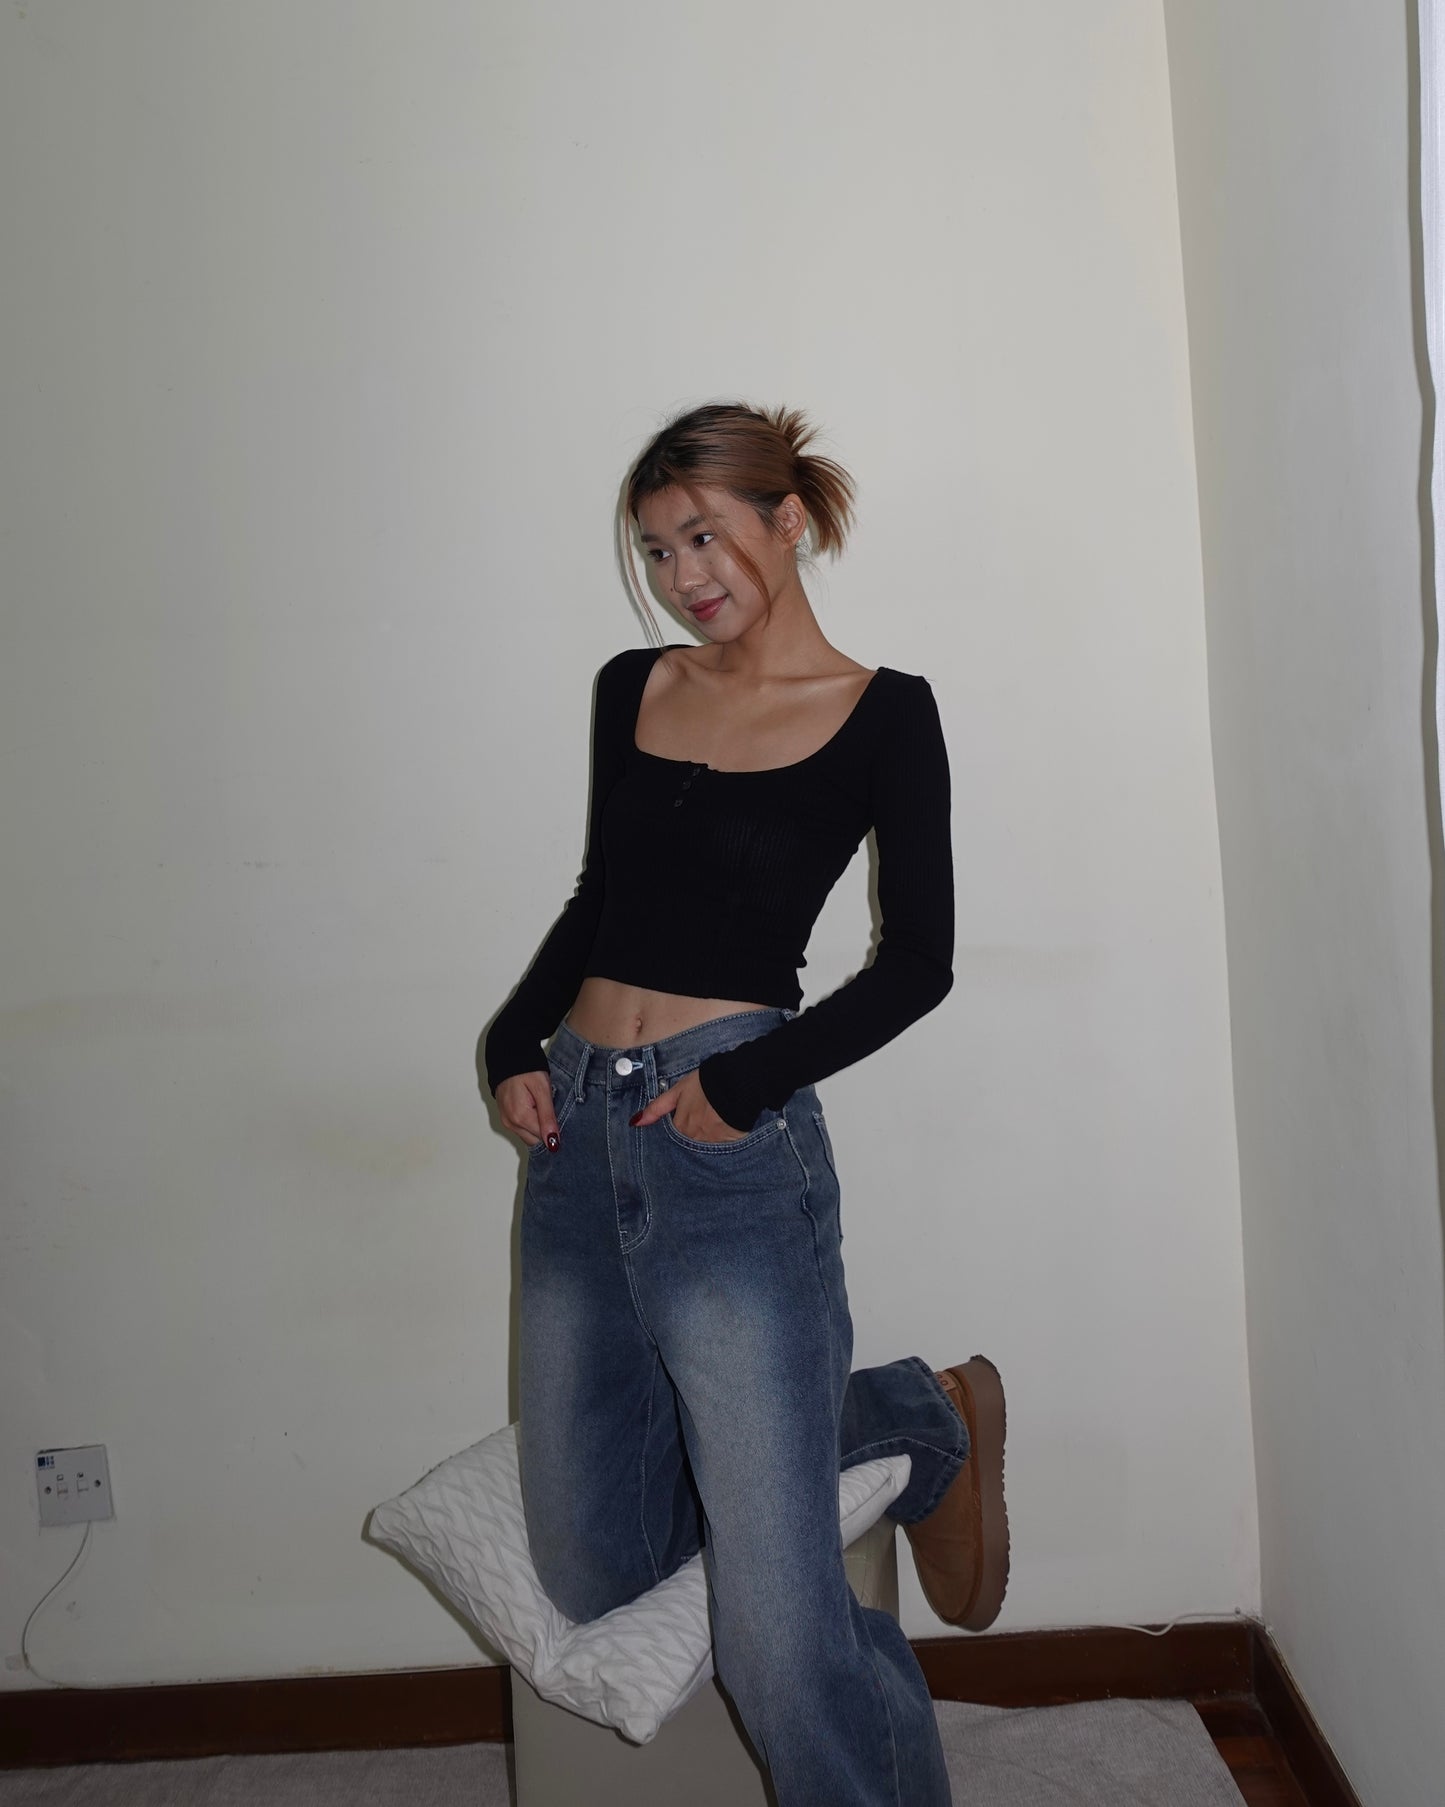 Annika wide leg jeans